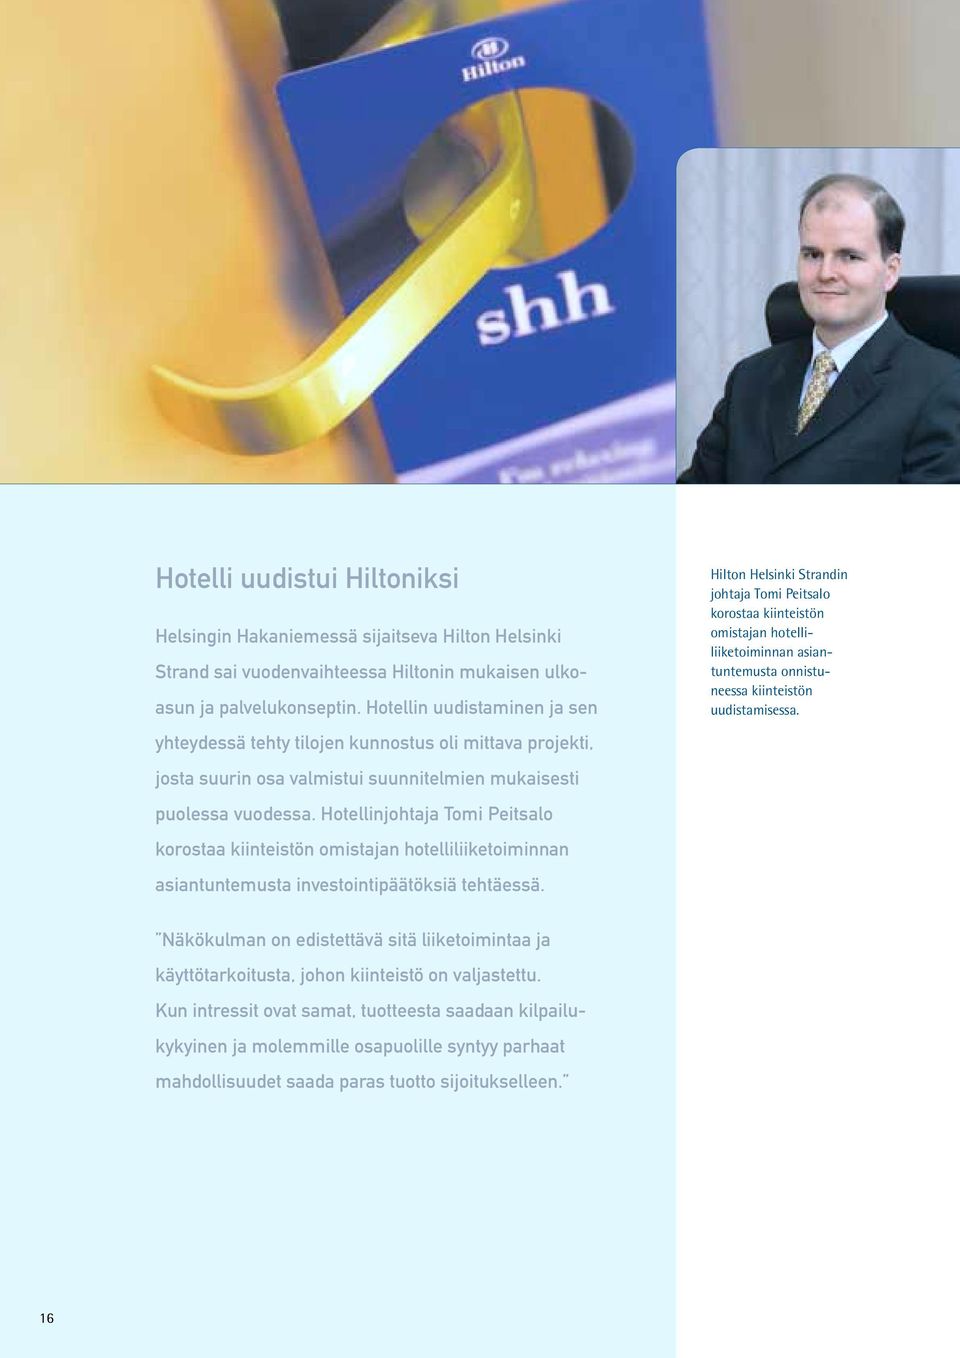 Hotellinjohtaja Tomi Peitsalo korostaa kiinteistön omistajan hotelliliiketoiminnan asiantuntemusta investointipäätöksiä tehtäessä.